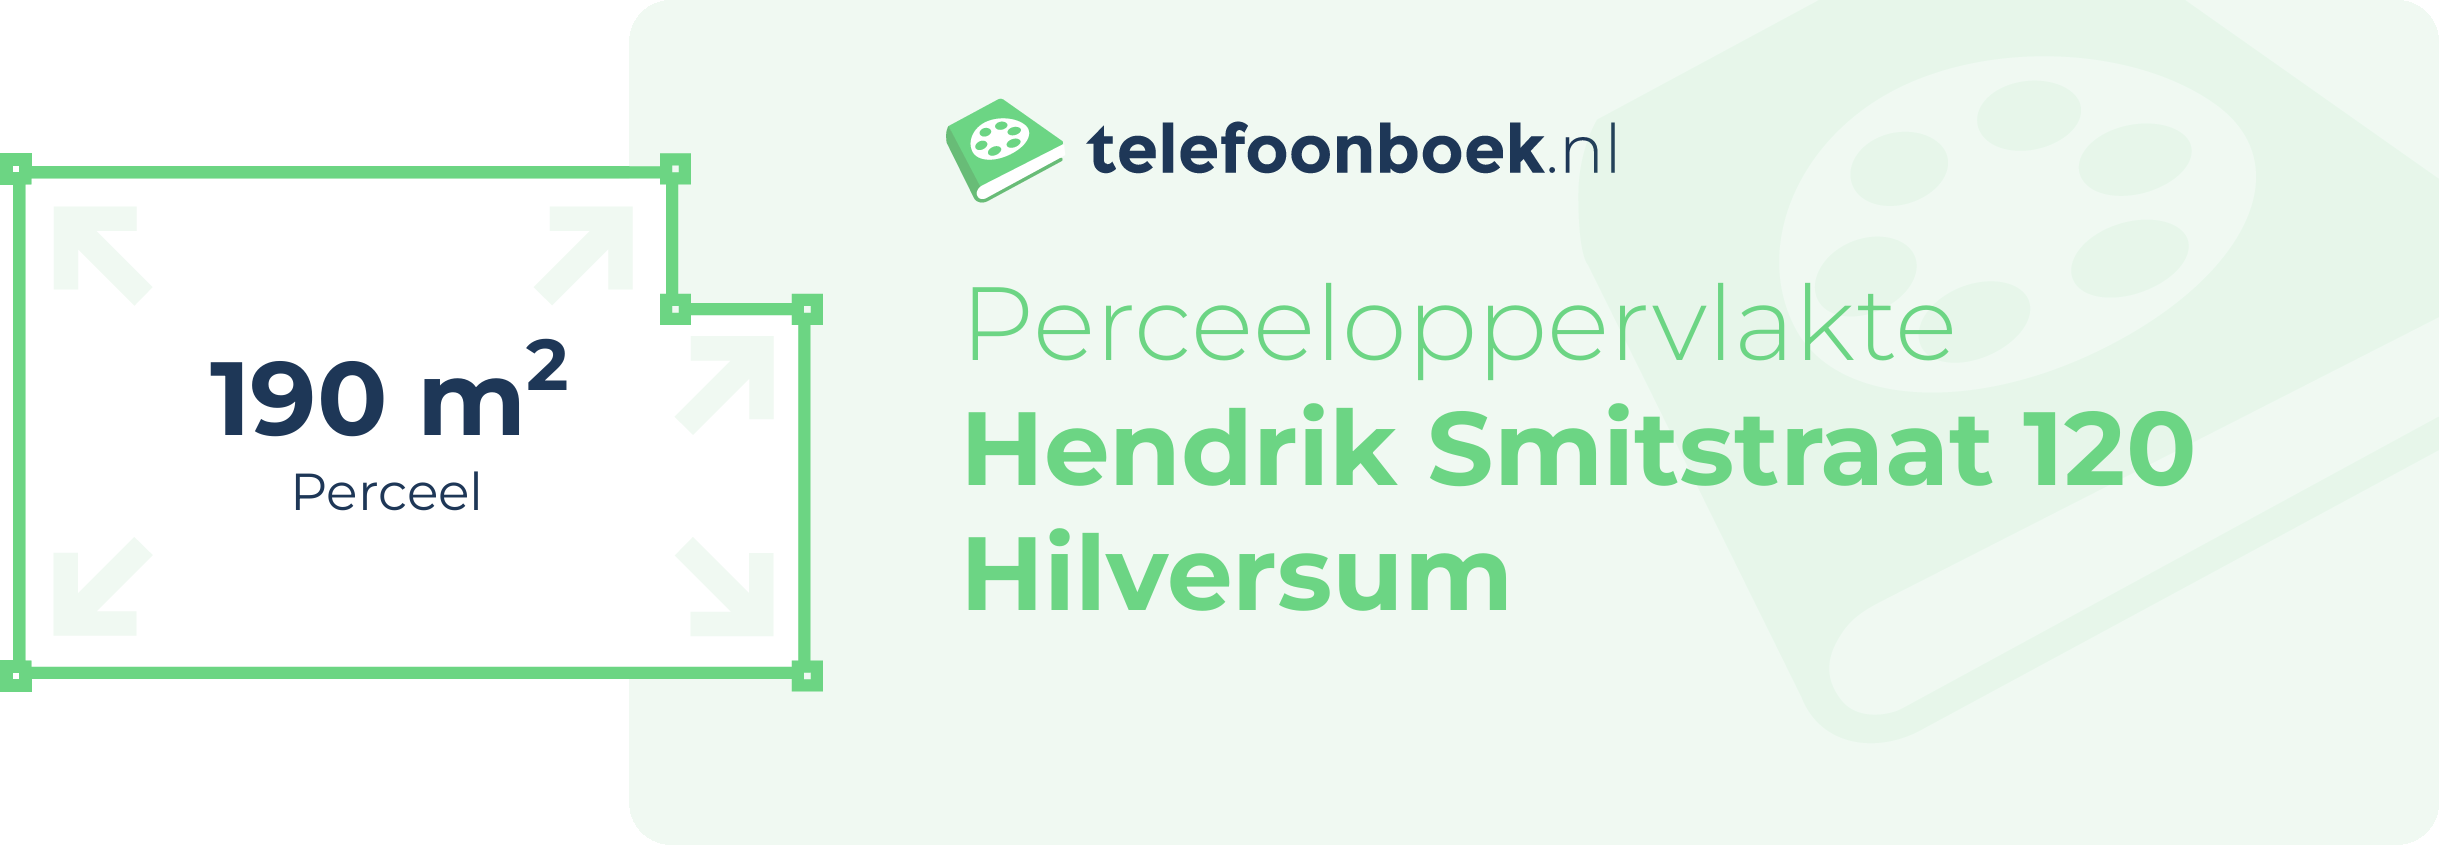 Perceeloppervlakte Hendrik Smitstraat 120 Hilversum